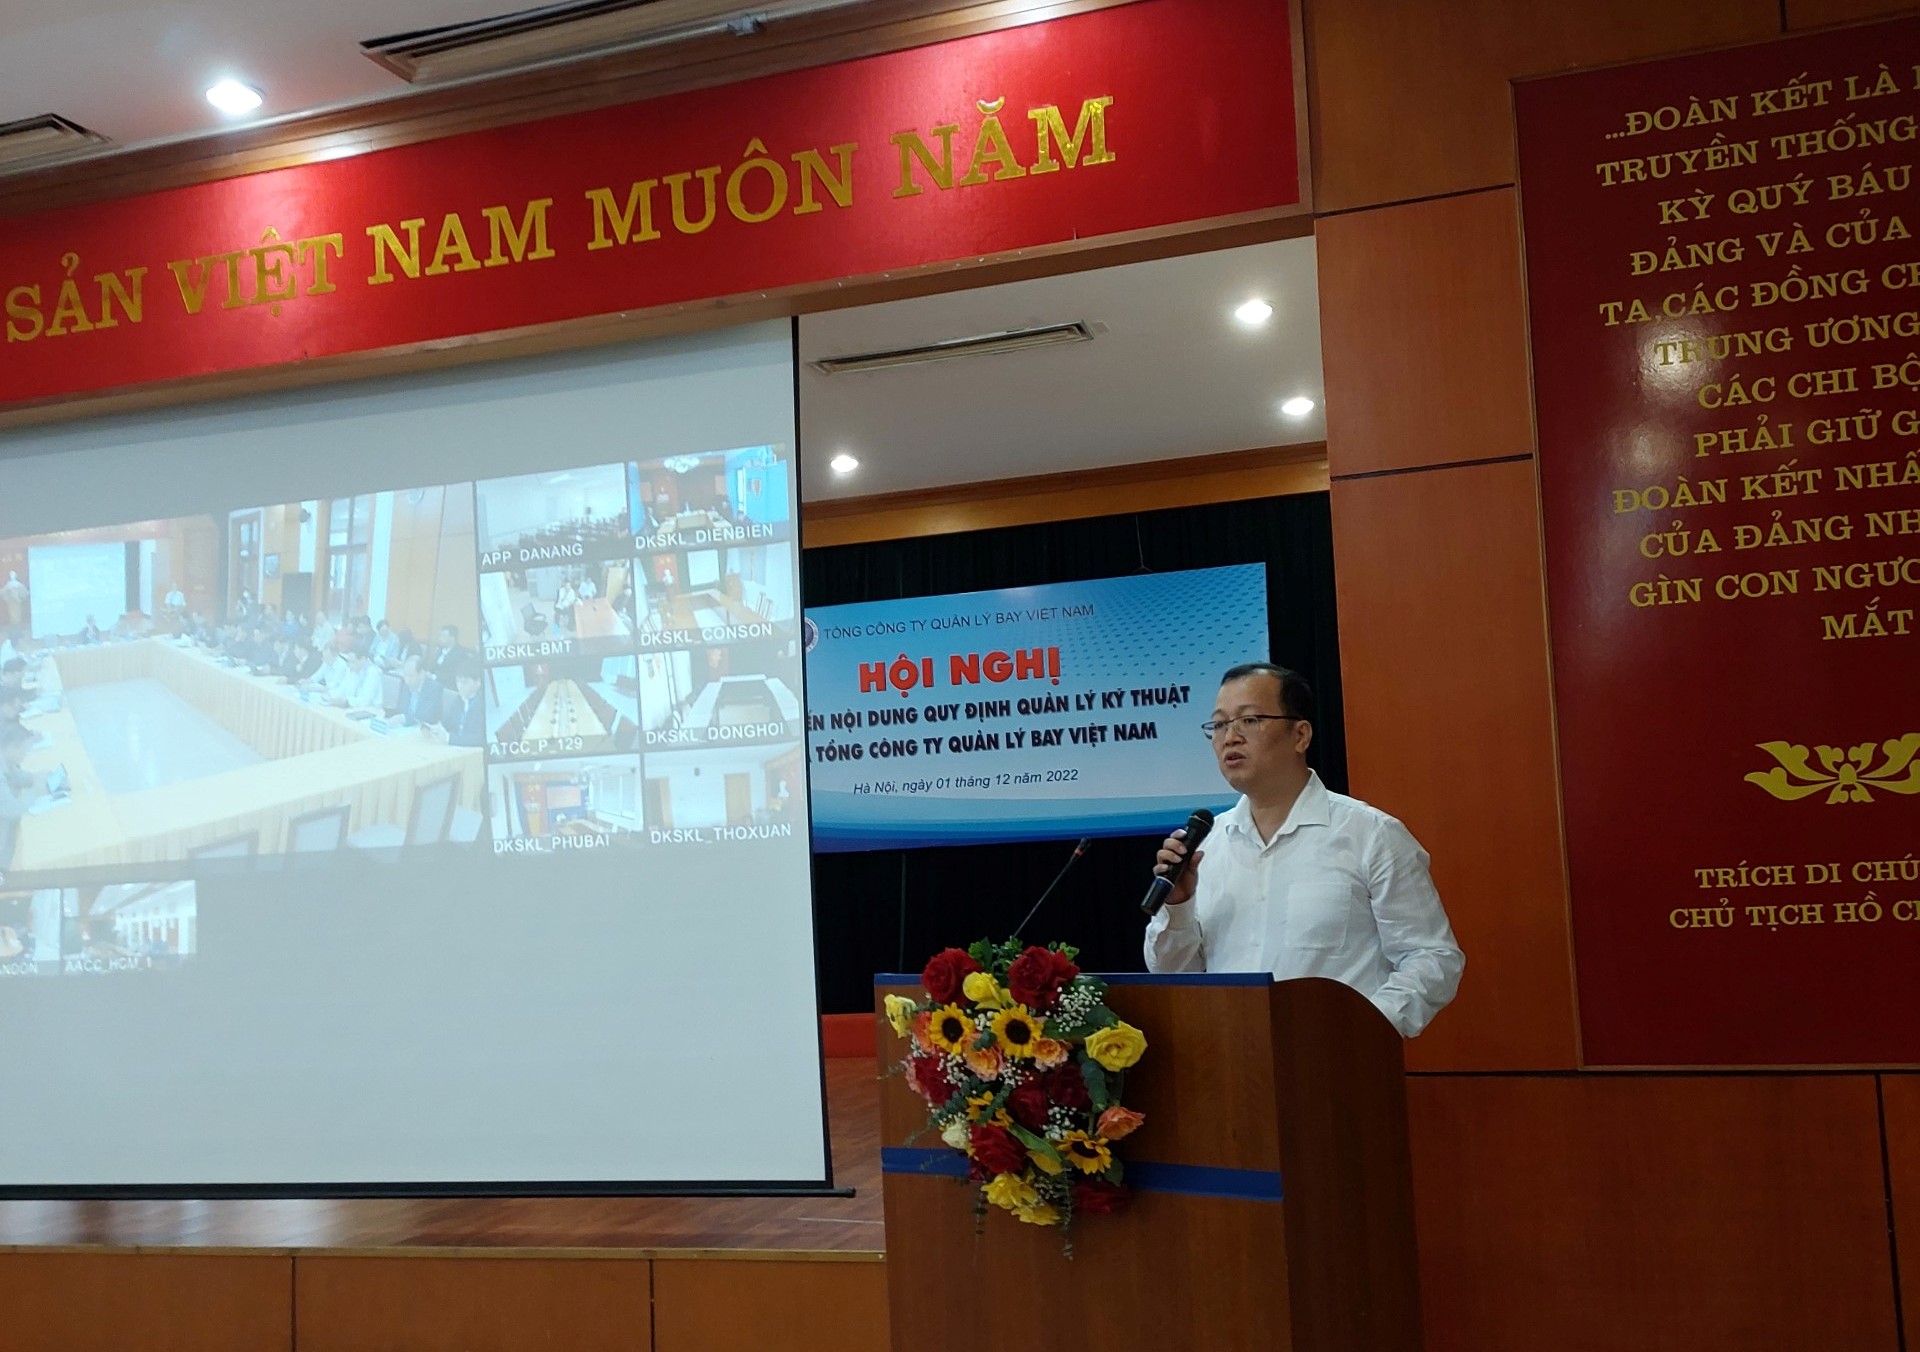 Hội nghị phổ biến nội dung Quy định quản lý kỹ thuật của Tổng công ty Quản lý Bay Việt Nam